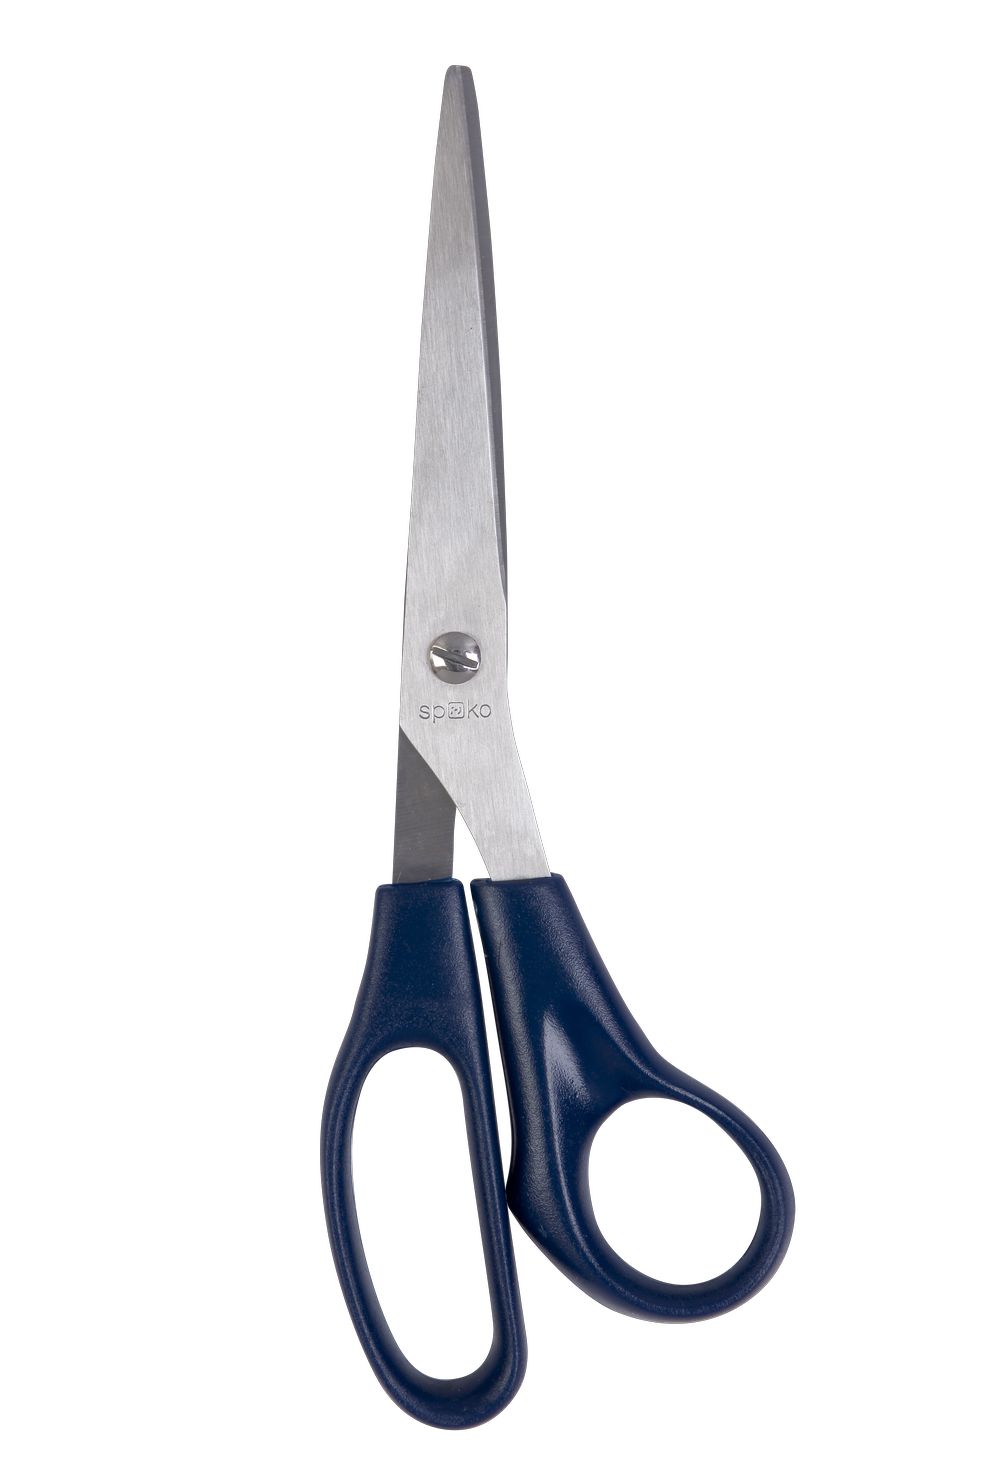 Nůžky kancelářské Spoko Economy, 21 cm, asymetrické, tmavě modré